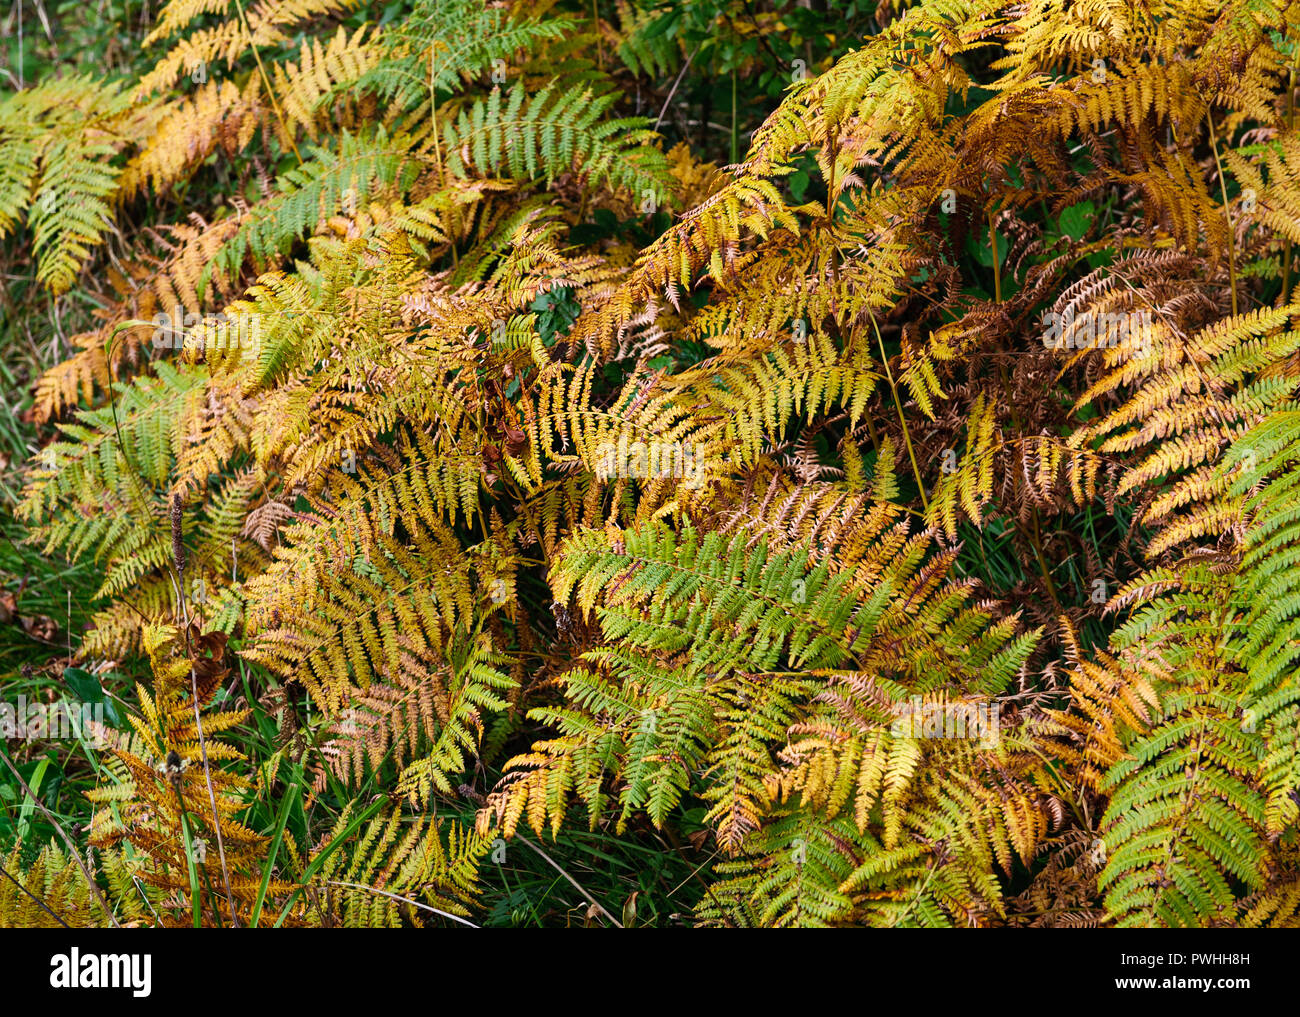 Herbst Hintergrund mit gelben Blättern Stockfoto